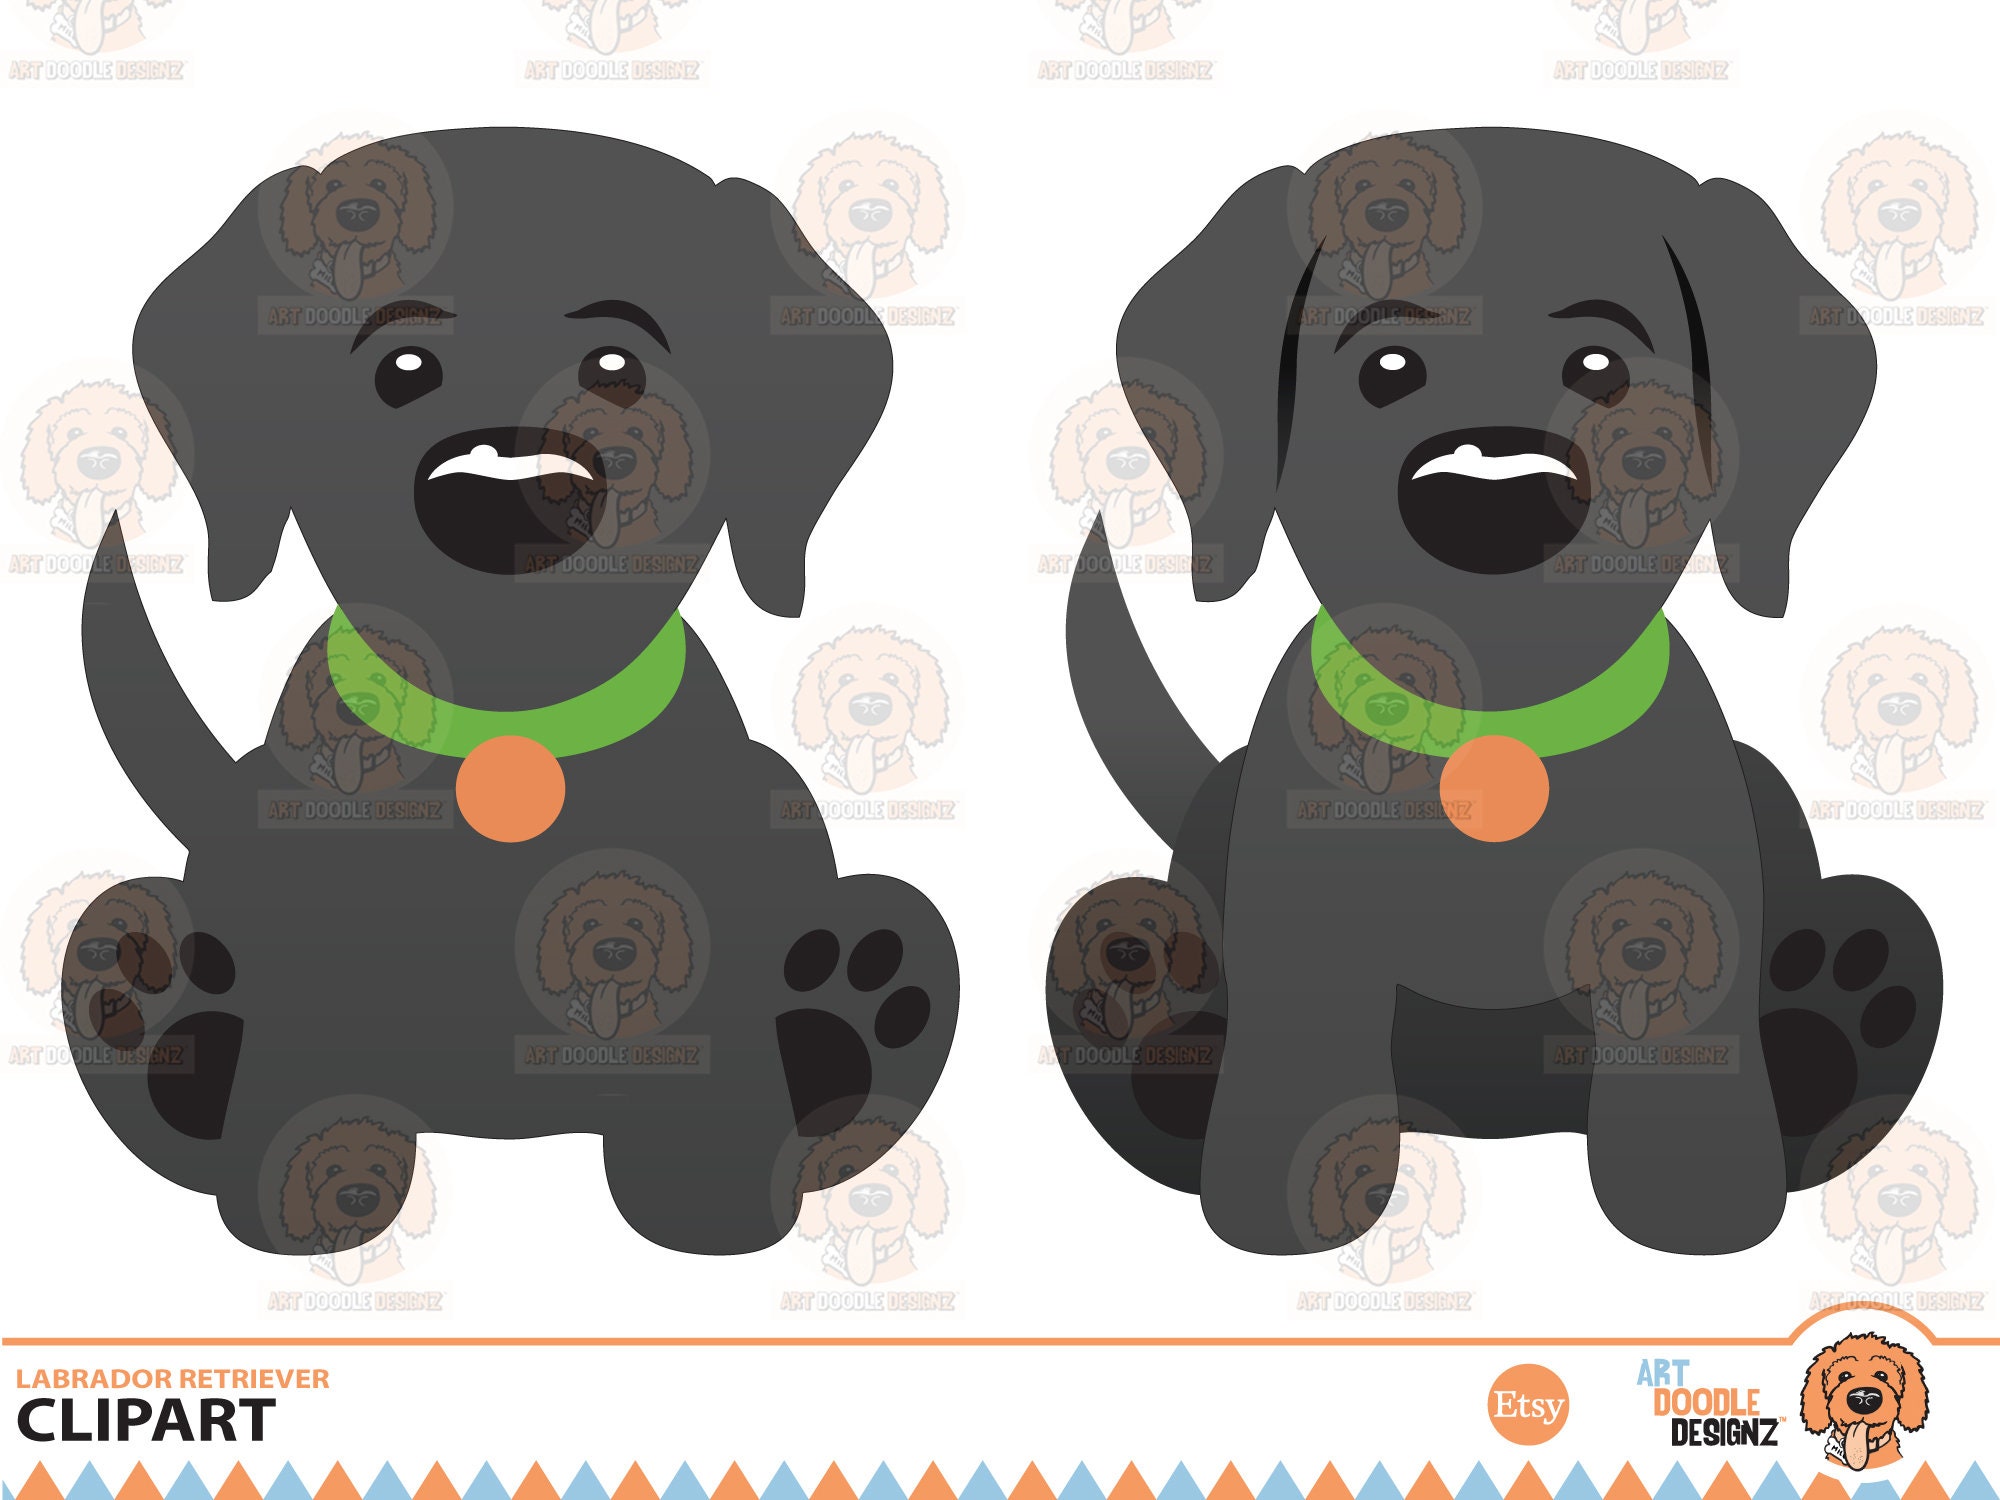 4 DOG LOVER • Car Coaster Sublimation Designs • Dog Lover • Dogs • Template  Digital Download Sublimation File png